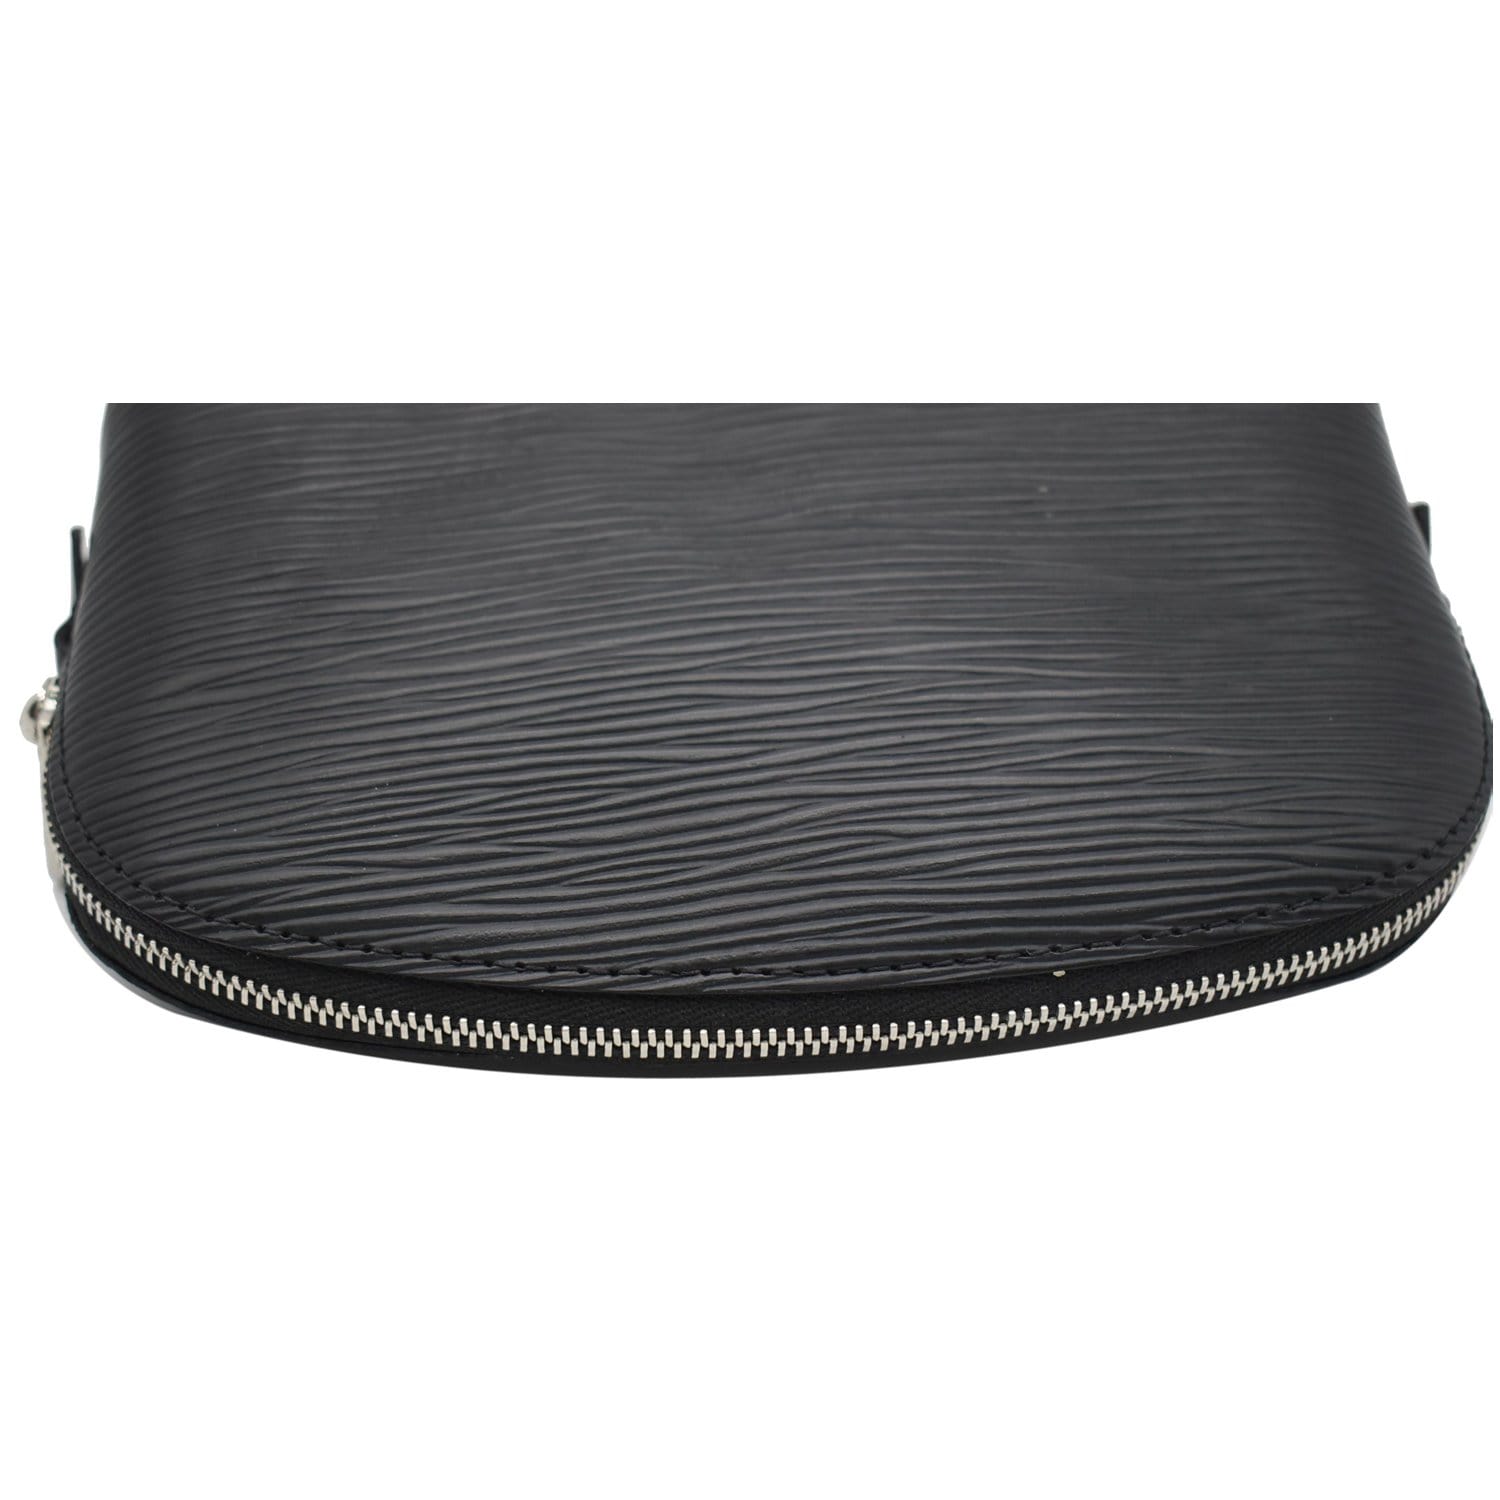 Louis Vuitton Black Epi Leather Pochette Homme Clutch Bag 863148